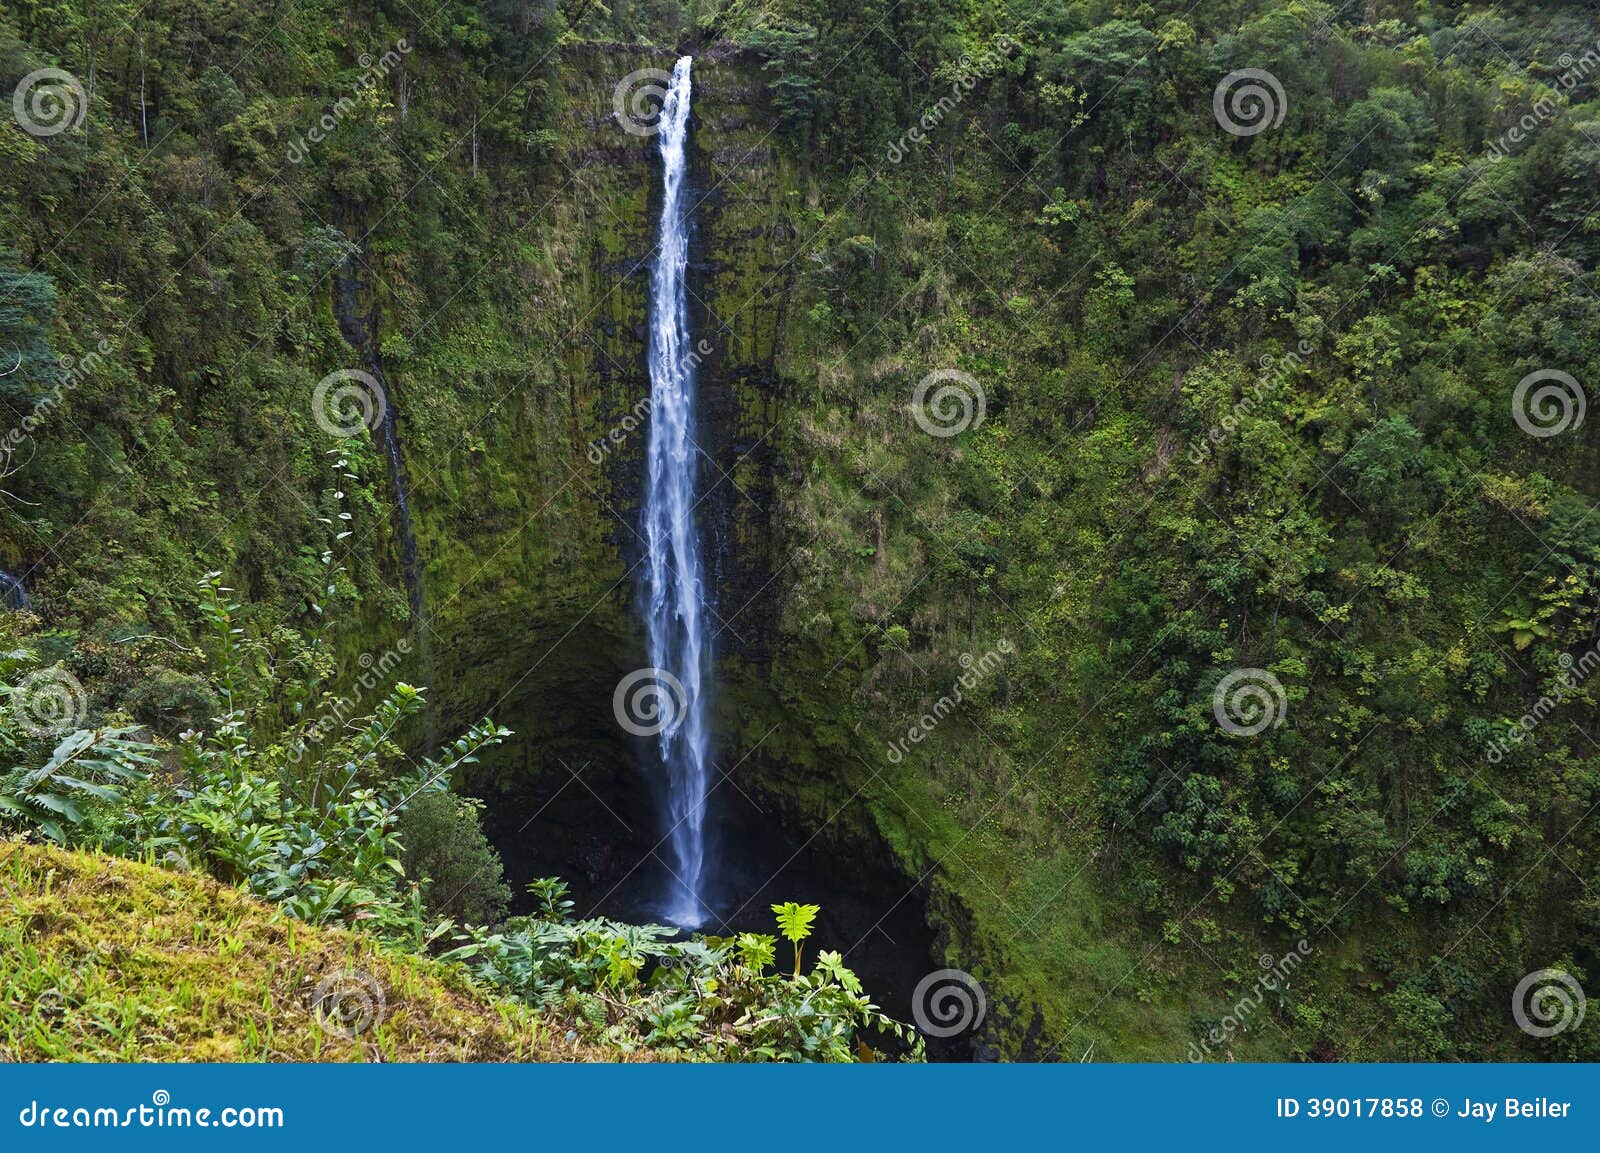 akaka falls, big island, hawaii